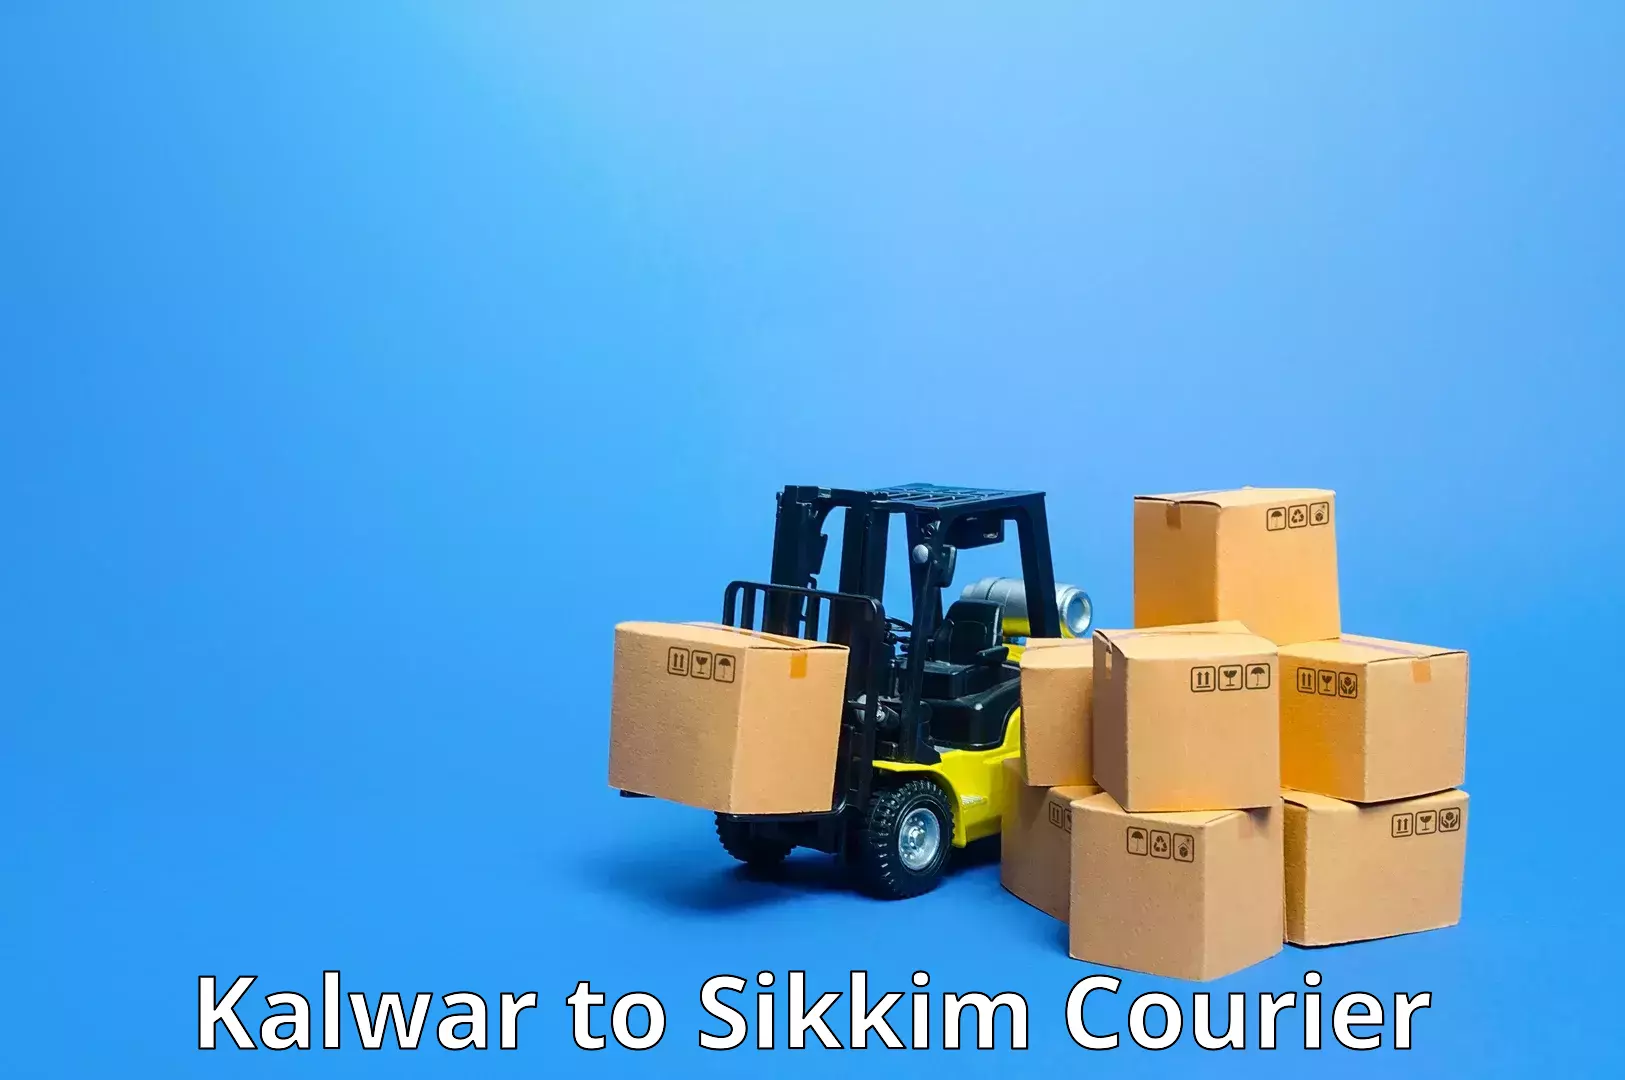 Comprehensive parcel tracking Kalwar to Mangan